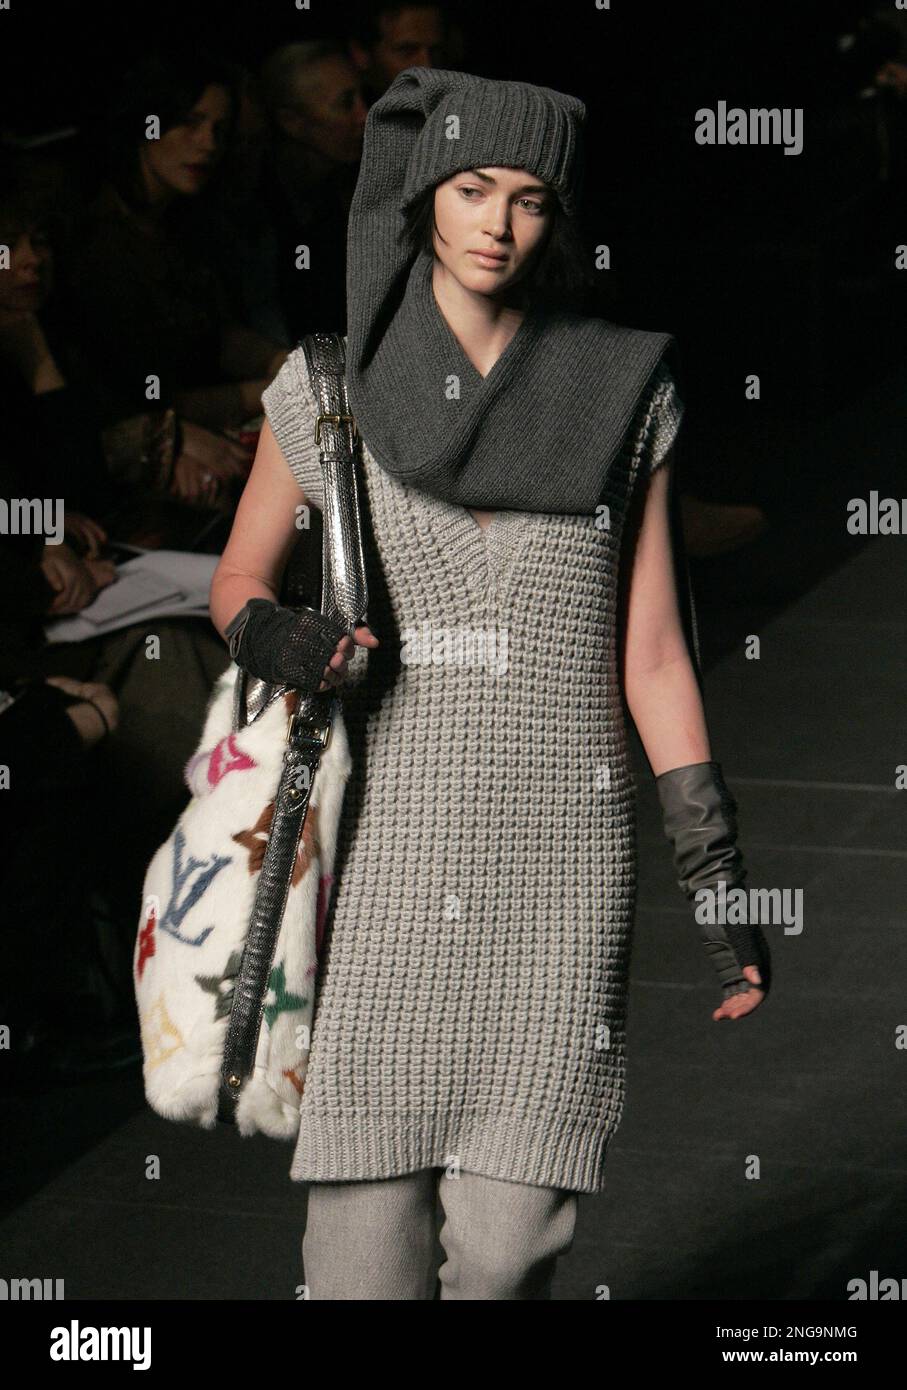 A model presents an ensemble by U.S. fashion designer Marc Jacobs